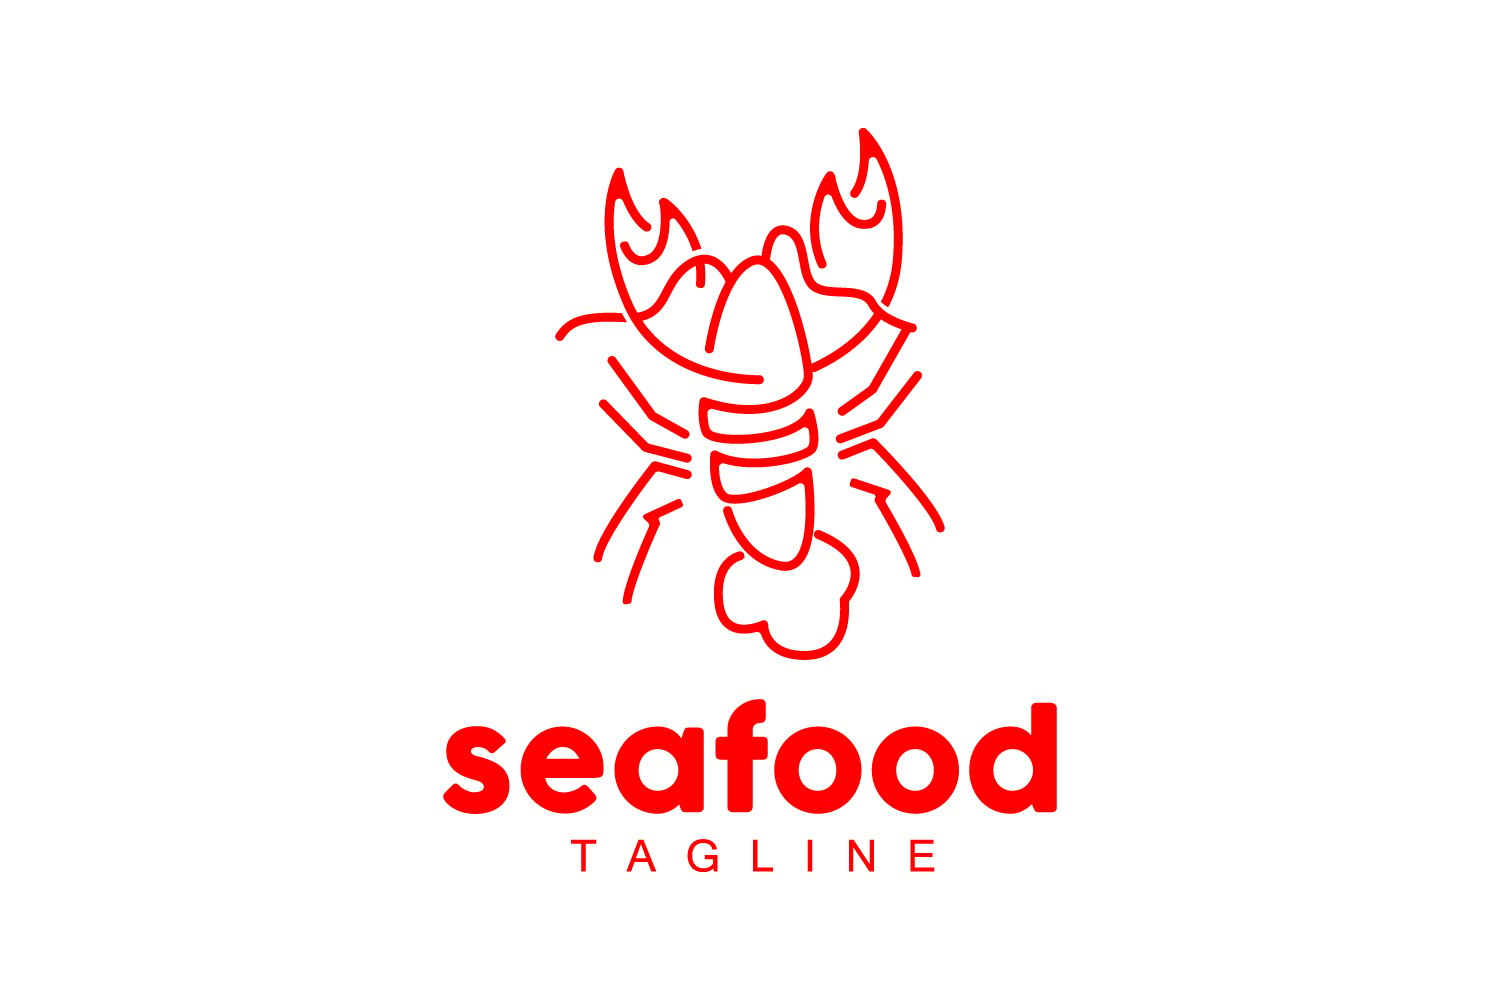 Sea animal lobster logo design vector V7